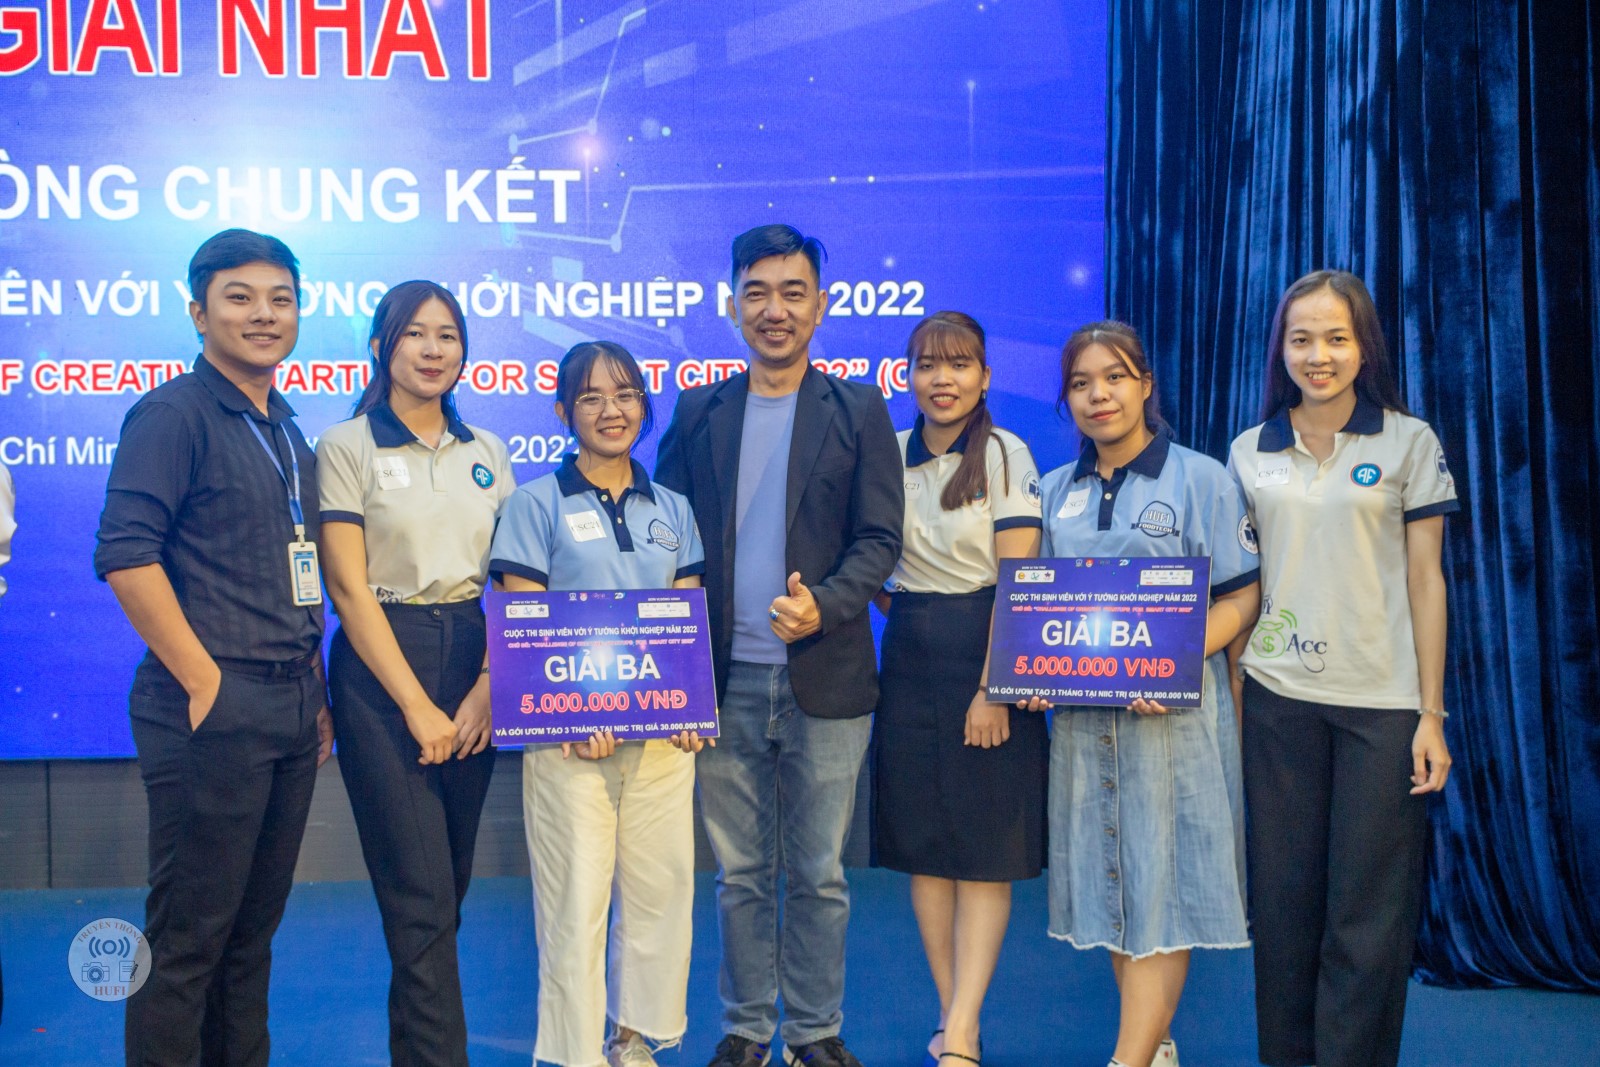 Nhóm sinh viên HUFI xuất sắc giành giải 3 cuộc thi Sinh viên với ý tưởng khởi nghiệp 2022